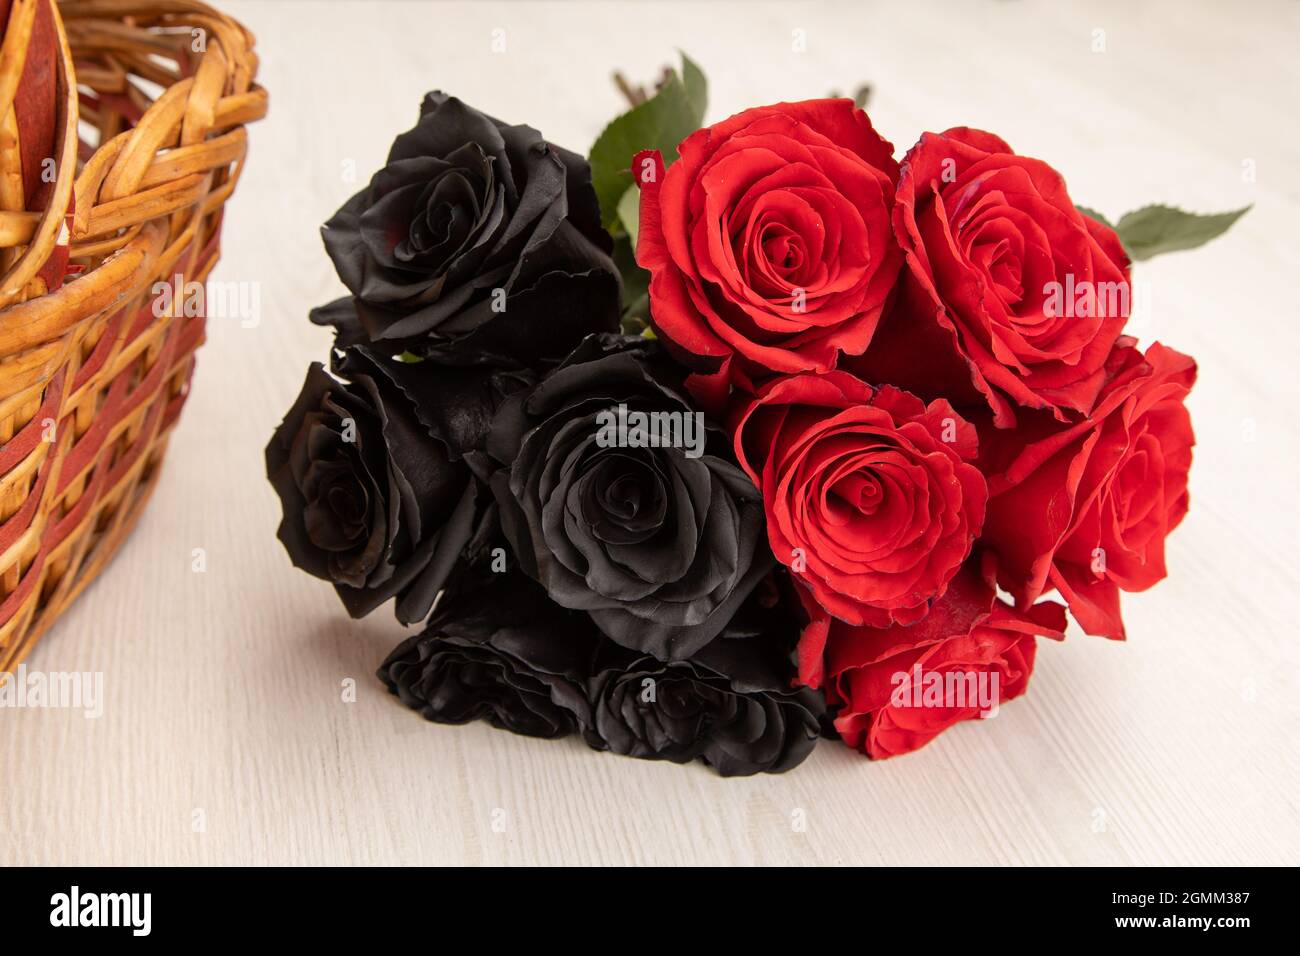 detalles de un ramo con flores de rosas negras y rojas, junto a una cesta  de mimbre, hermosa decoración con belleza de la naturaleza en una mesa,  detalle de la pe Fotografía